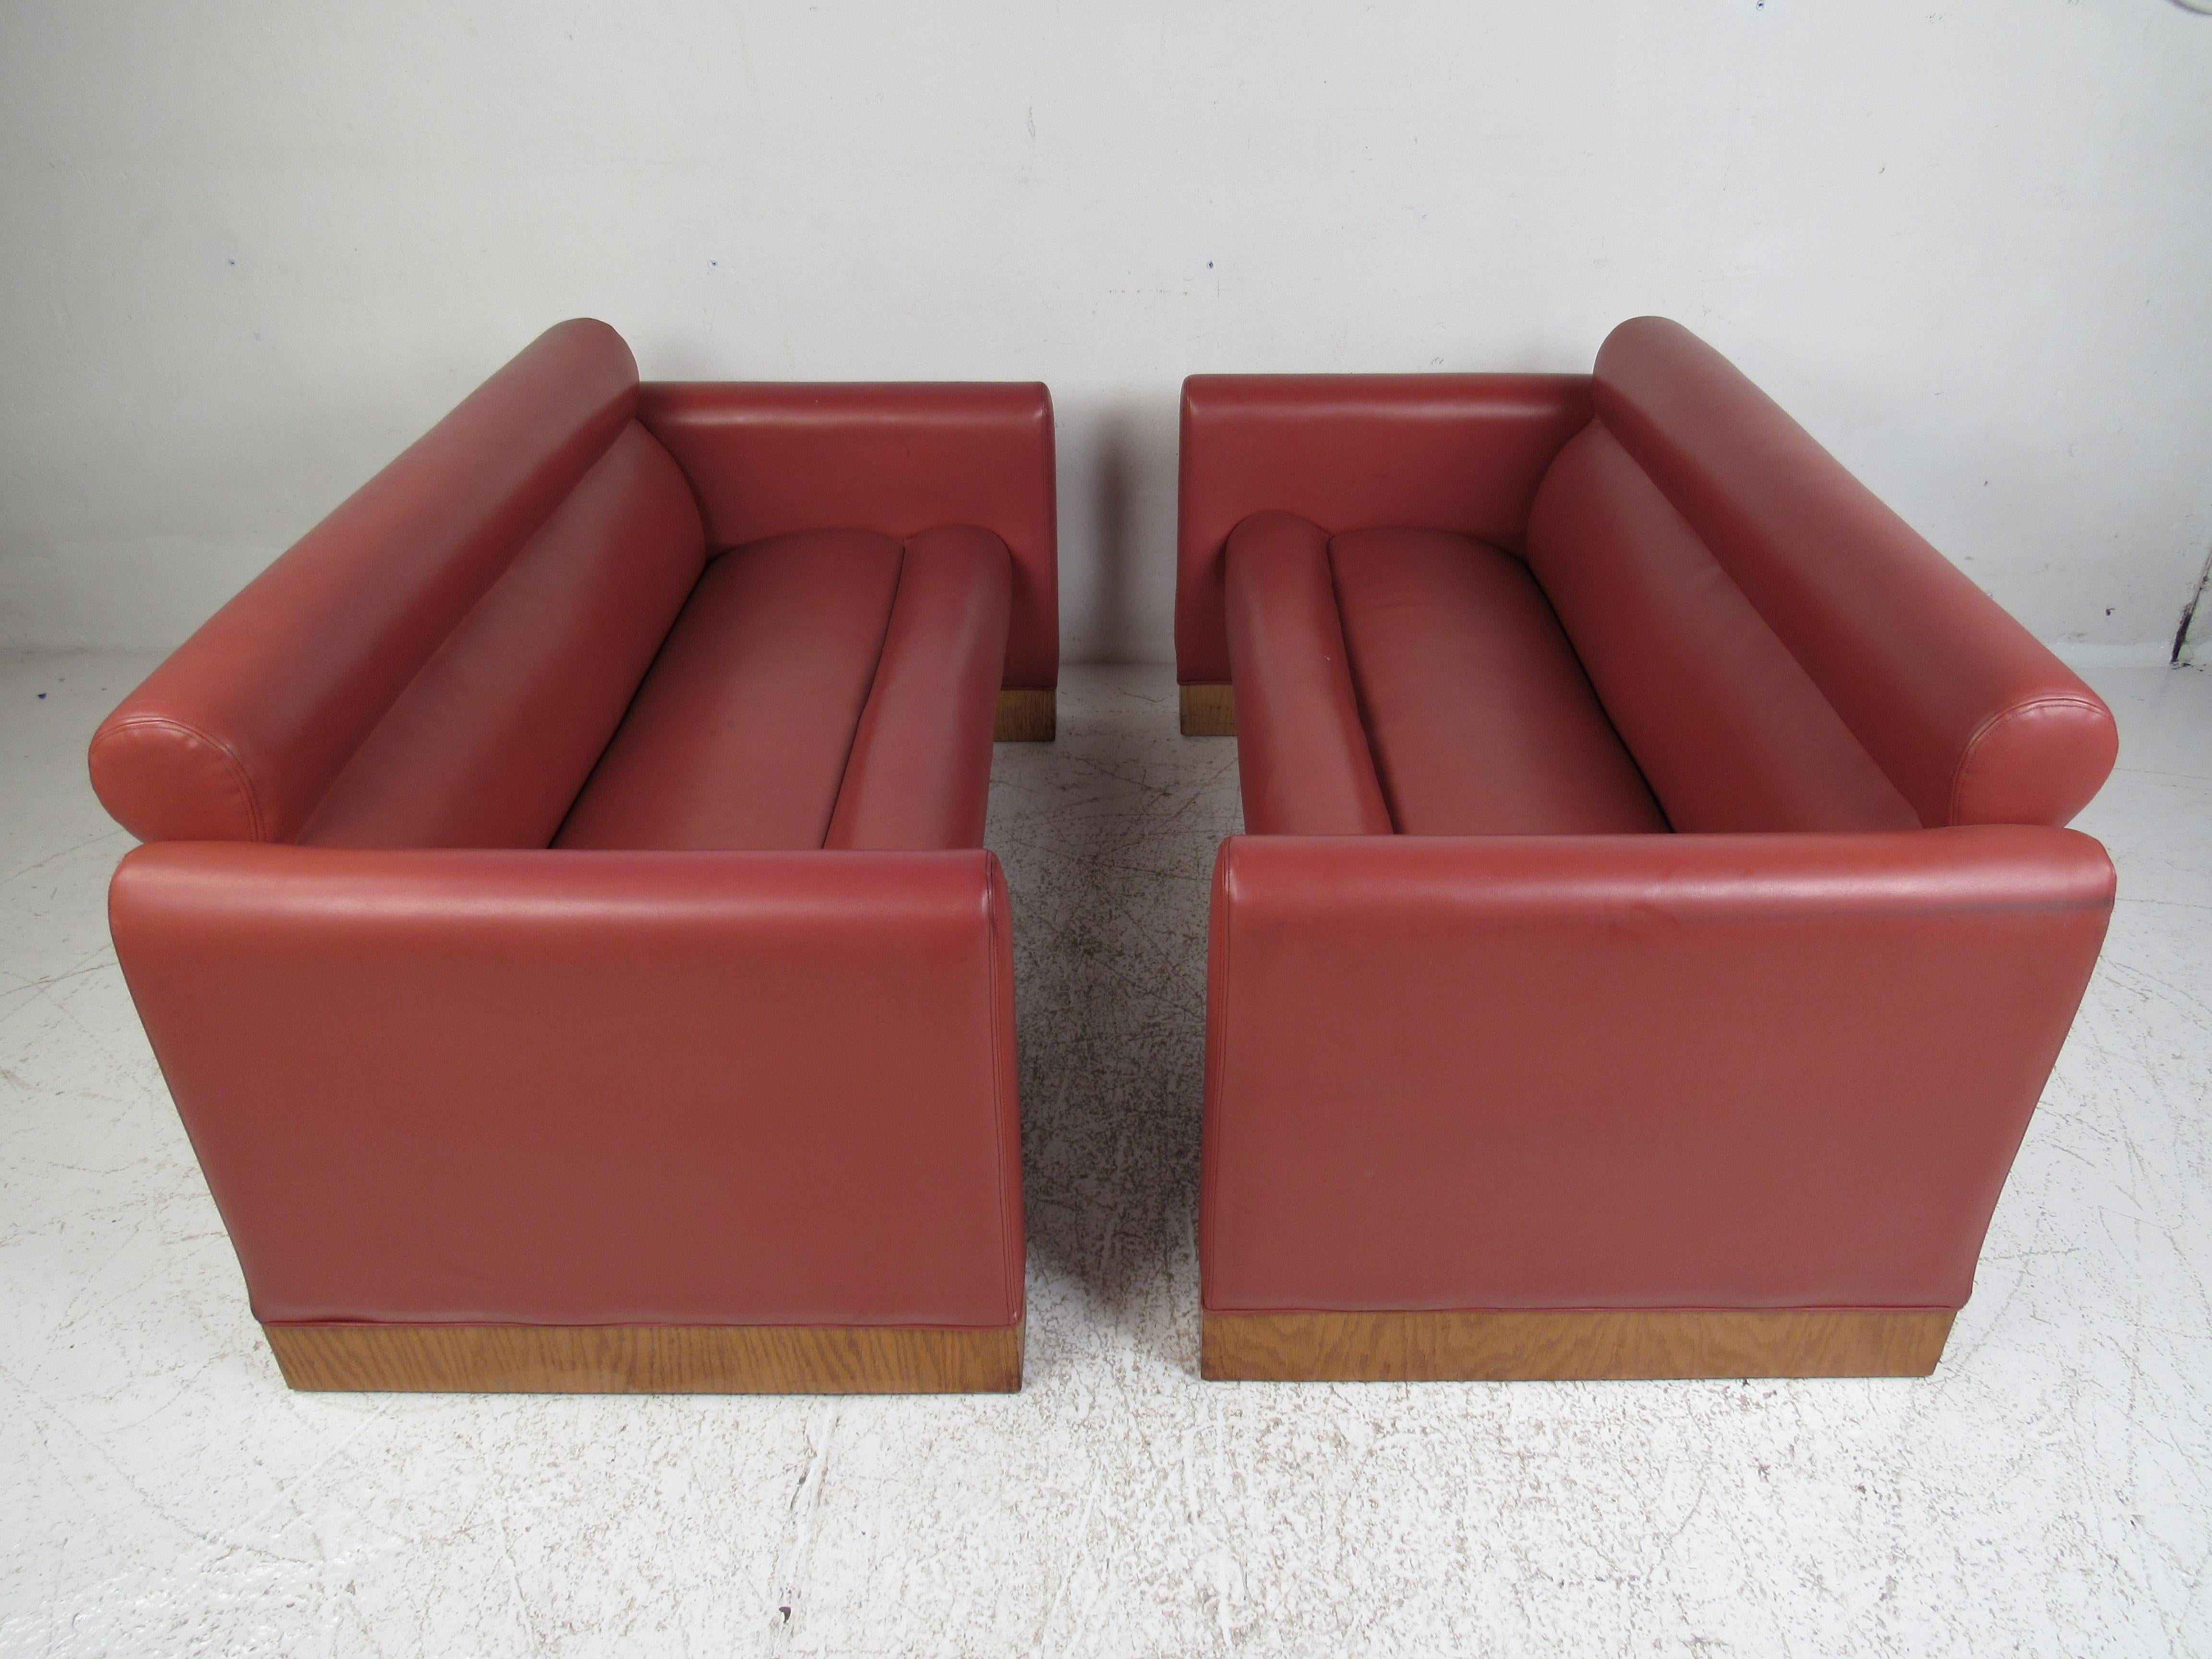 Cette belle paire de canapés modernes vintage est dotée d'un revêtement en vinyle rose et d'une base avec une garniture en bois. Un design élégant et confortable qui s'impose dans n'importe quelle disposition de sièges. Veuillez confirmer la